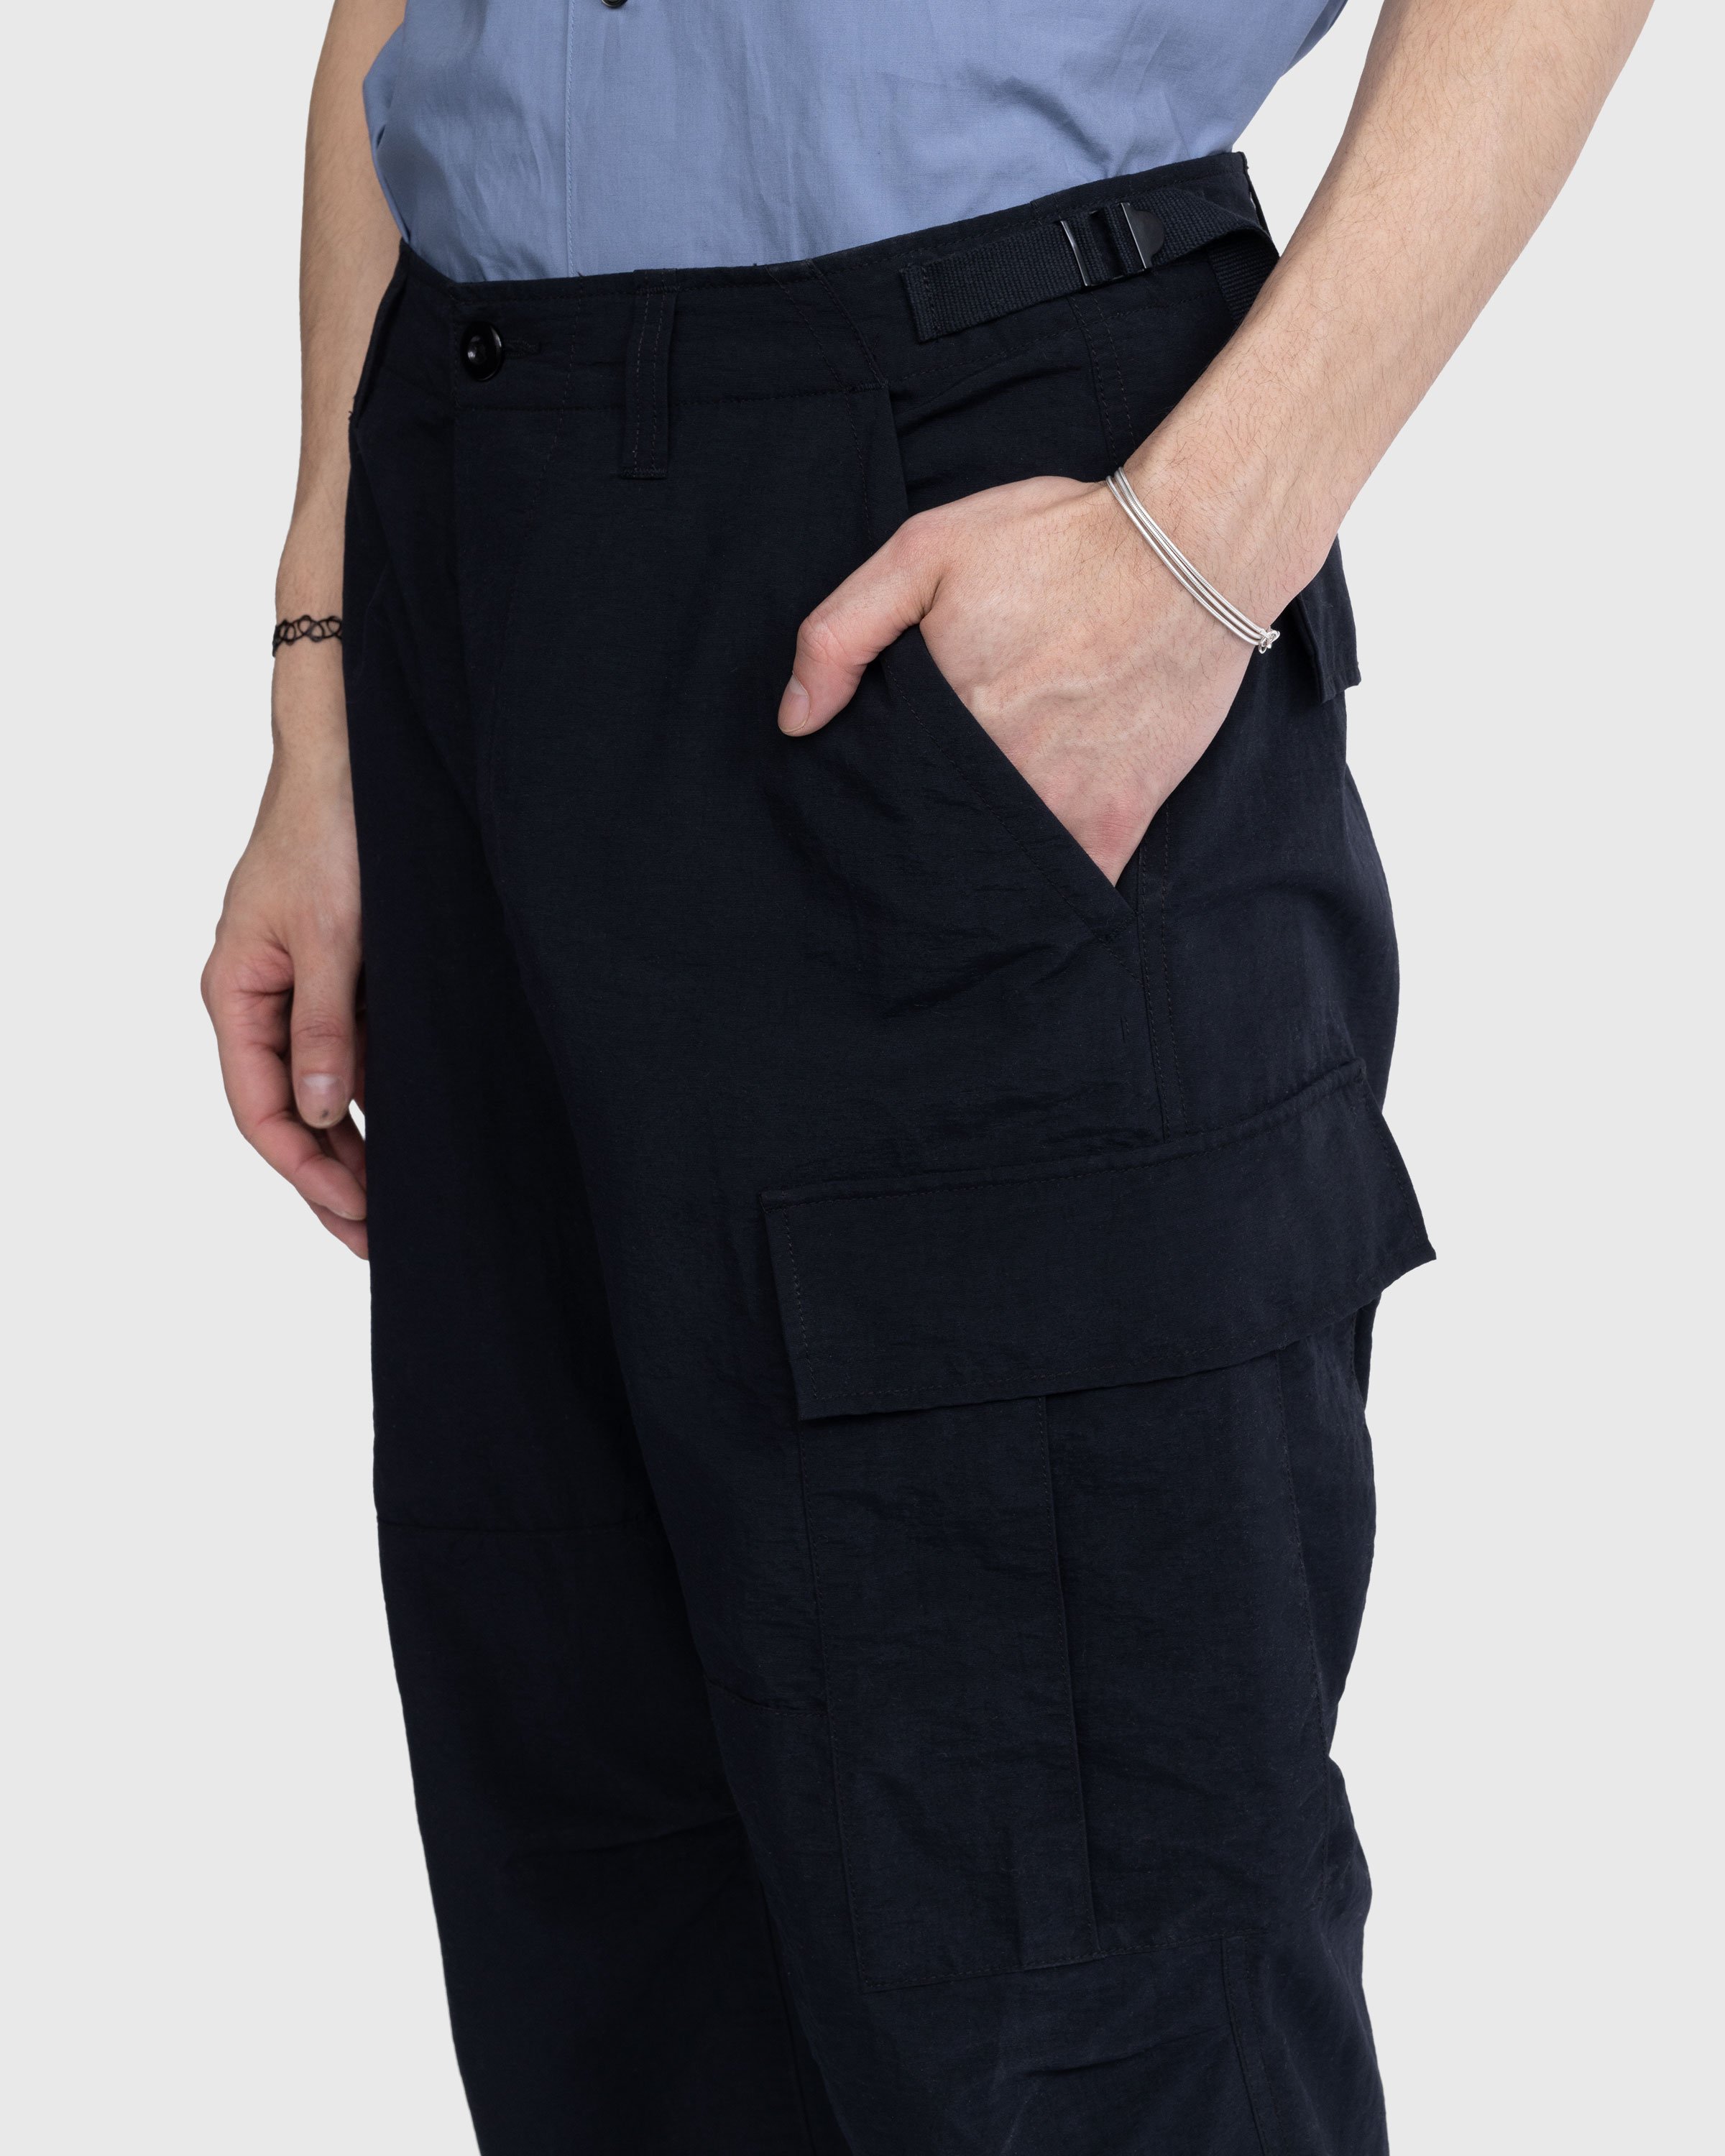 Highsnobiety - Nylon Cargo Pants Black - Clothing - Black - Image 5